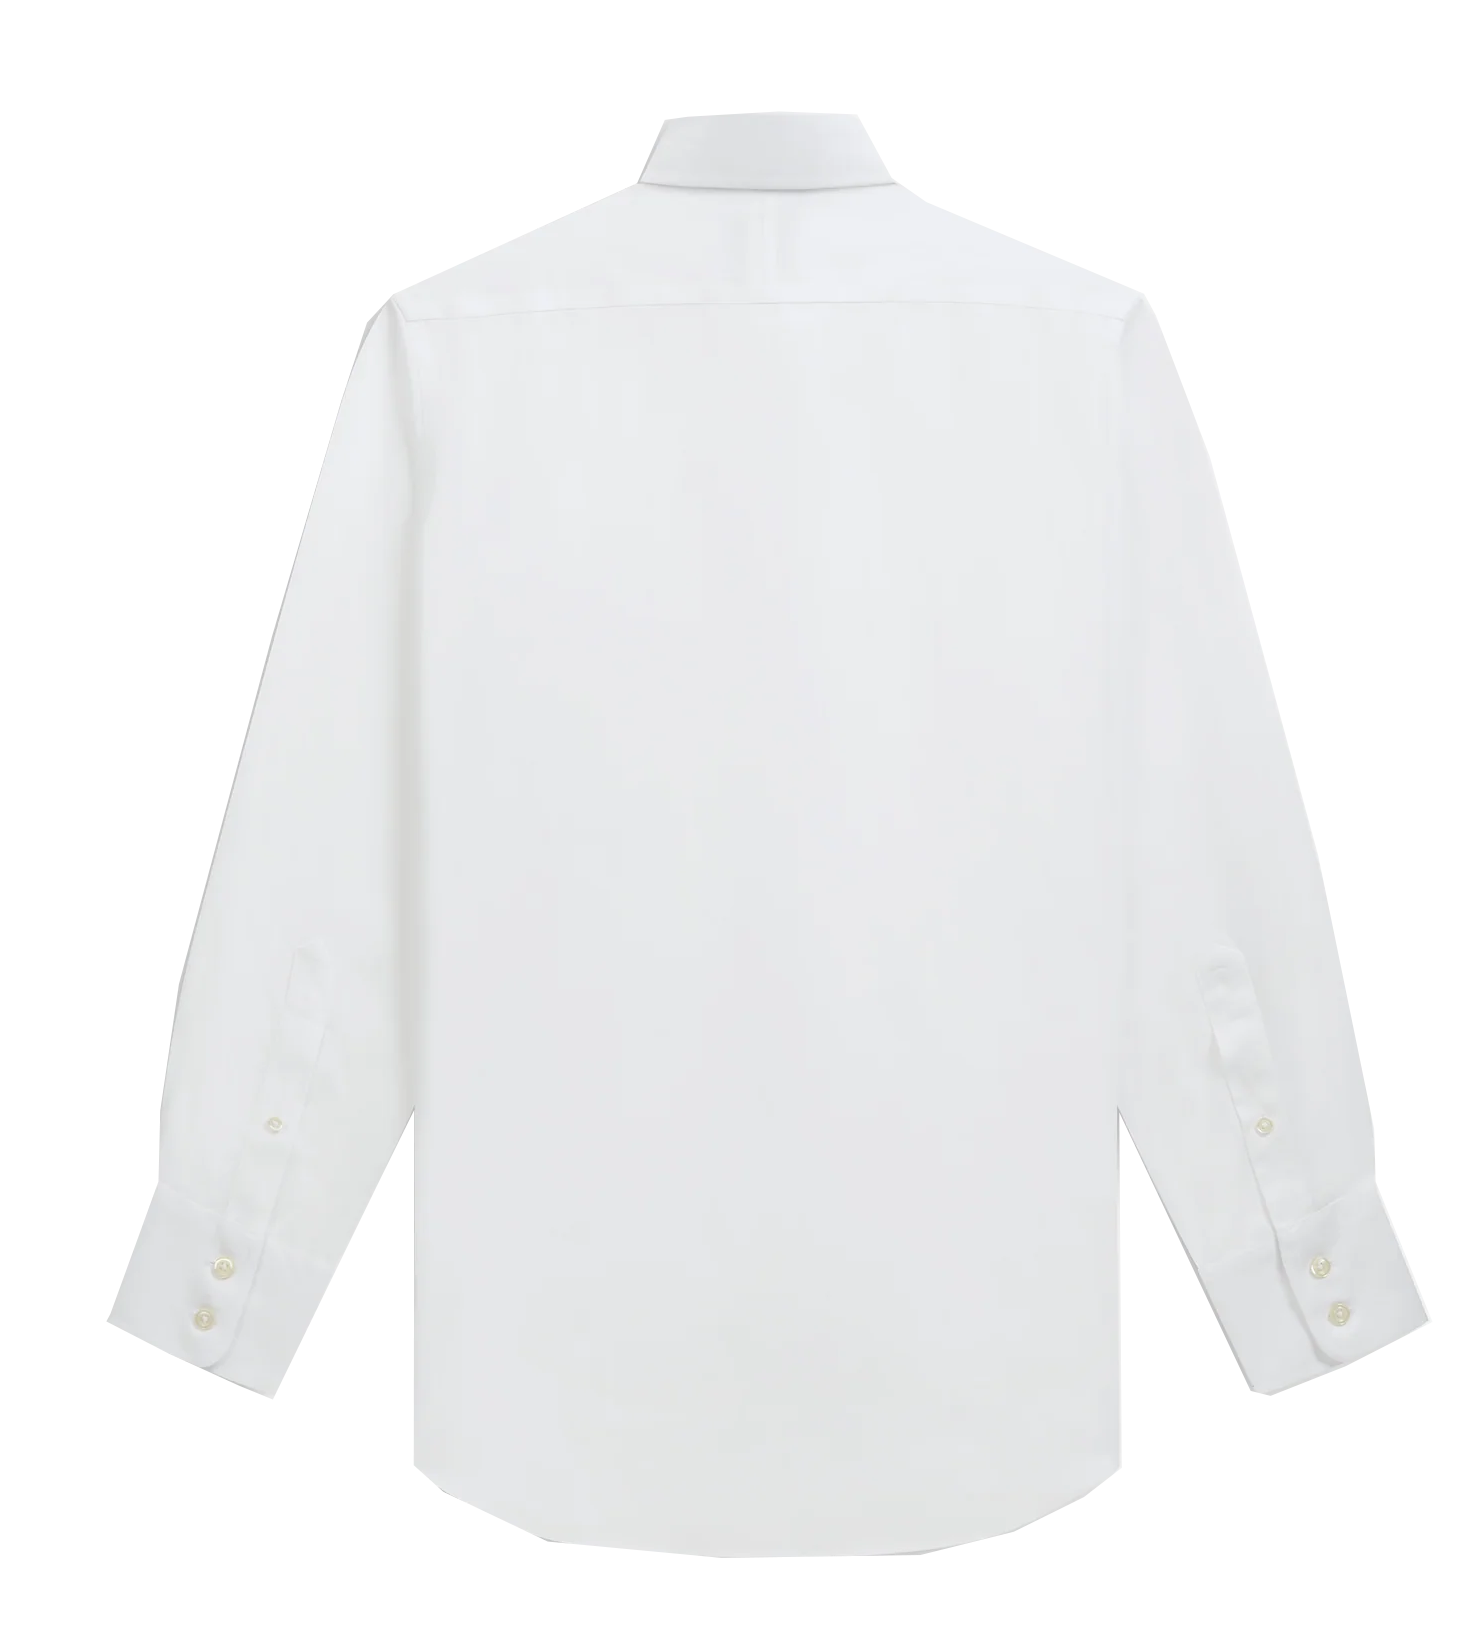 White Second Life Shirt Volume 2 - White Print